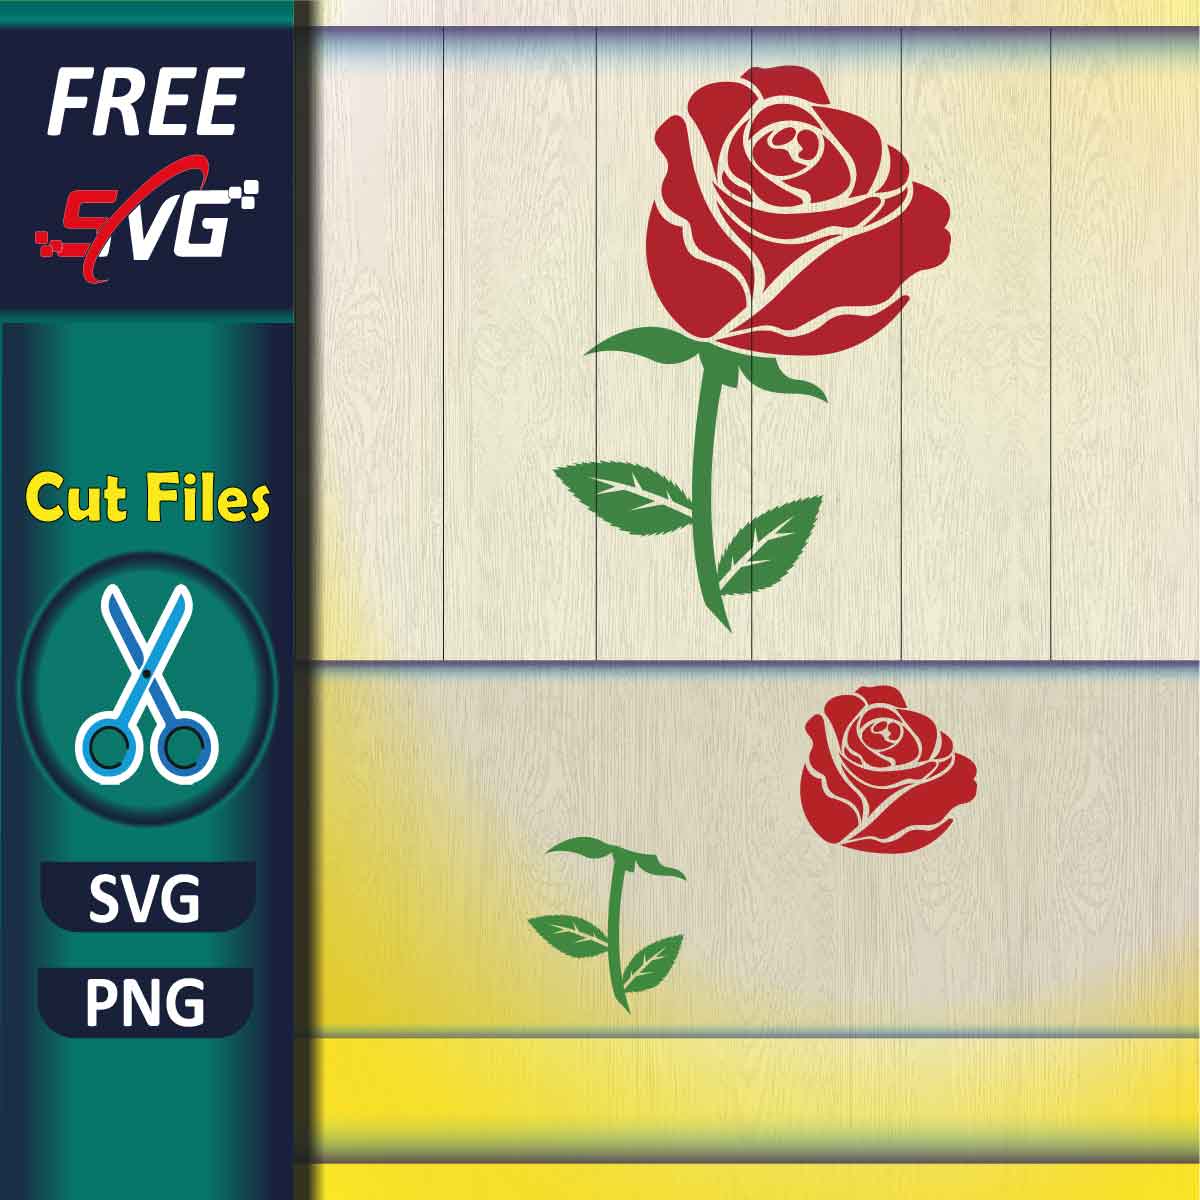 Rose Monogram SVG Free - Free SVG files